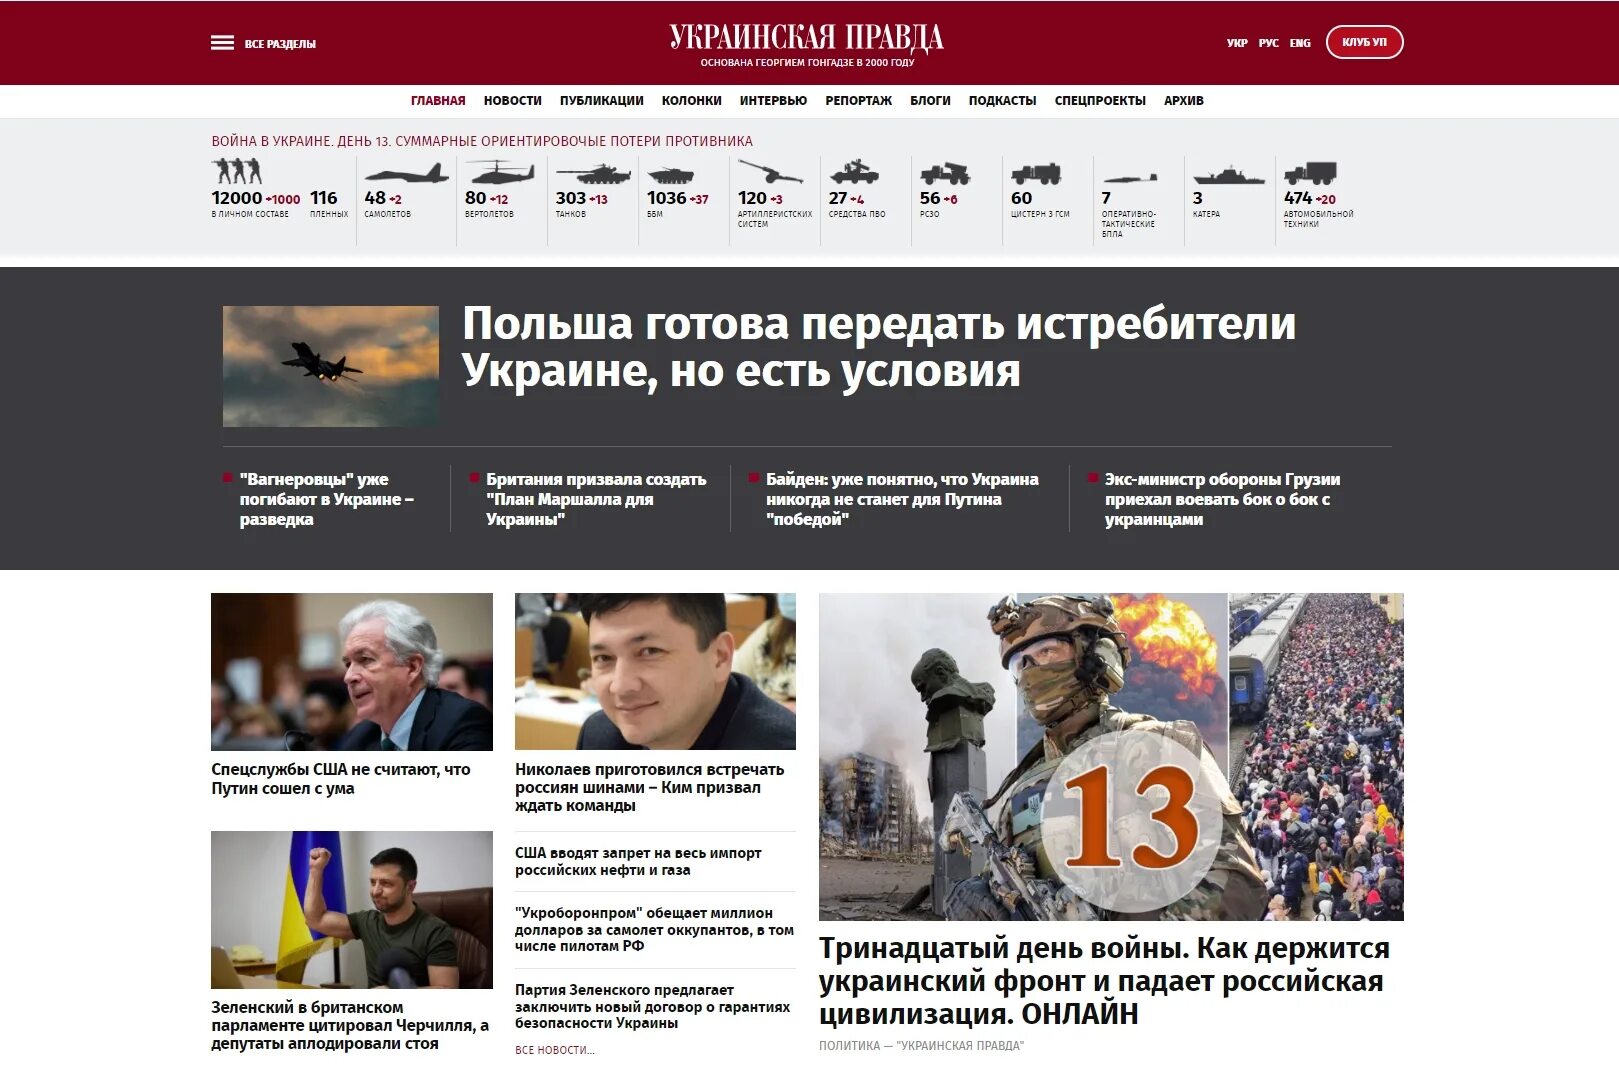 Последние новости украины правда тв. Украинская правда. Урбпинская правда. Украинские СМИ. Независимые СМИ О войне на Украине.